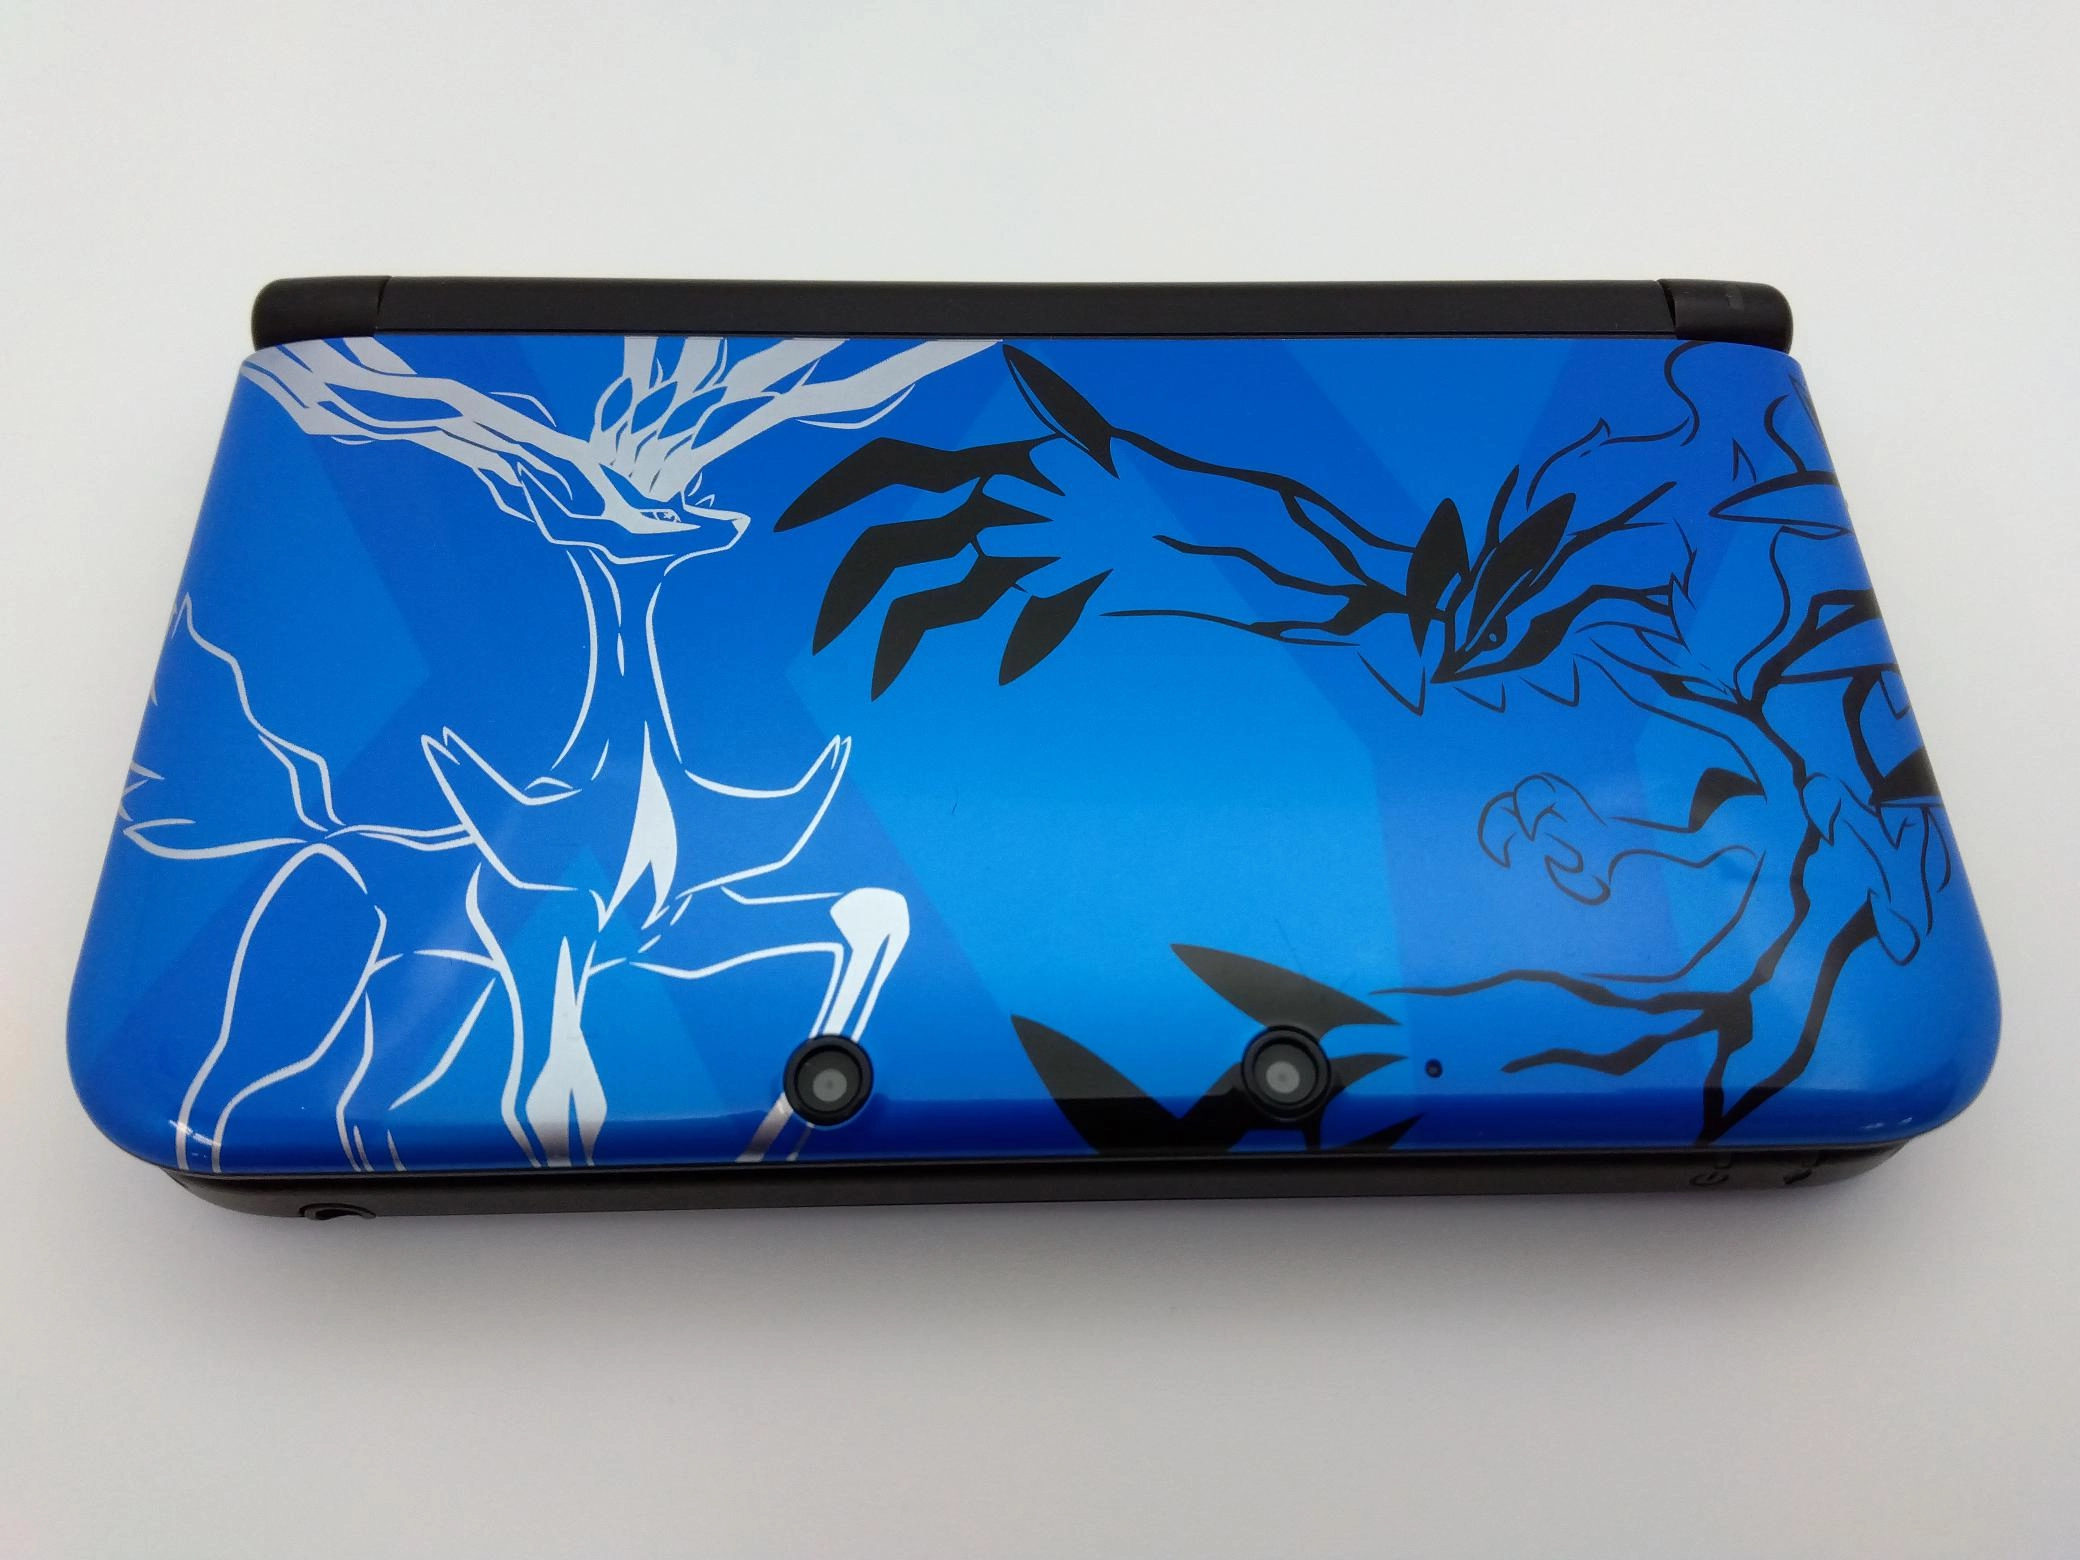 ポケットモンスター X Yパック ゼルネアス・イベルタル ブルー/3DS 